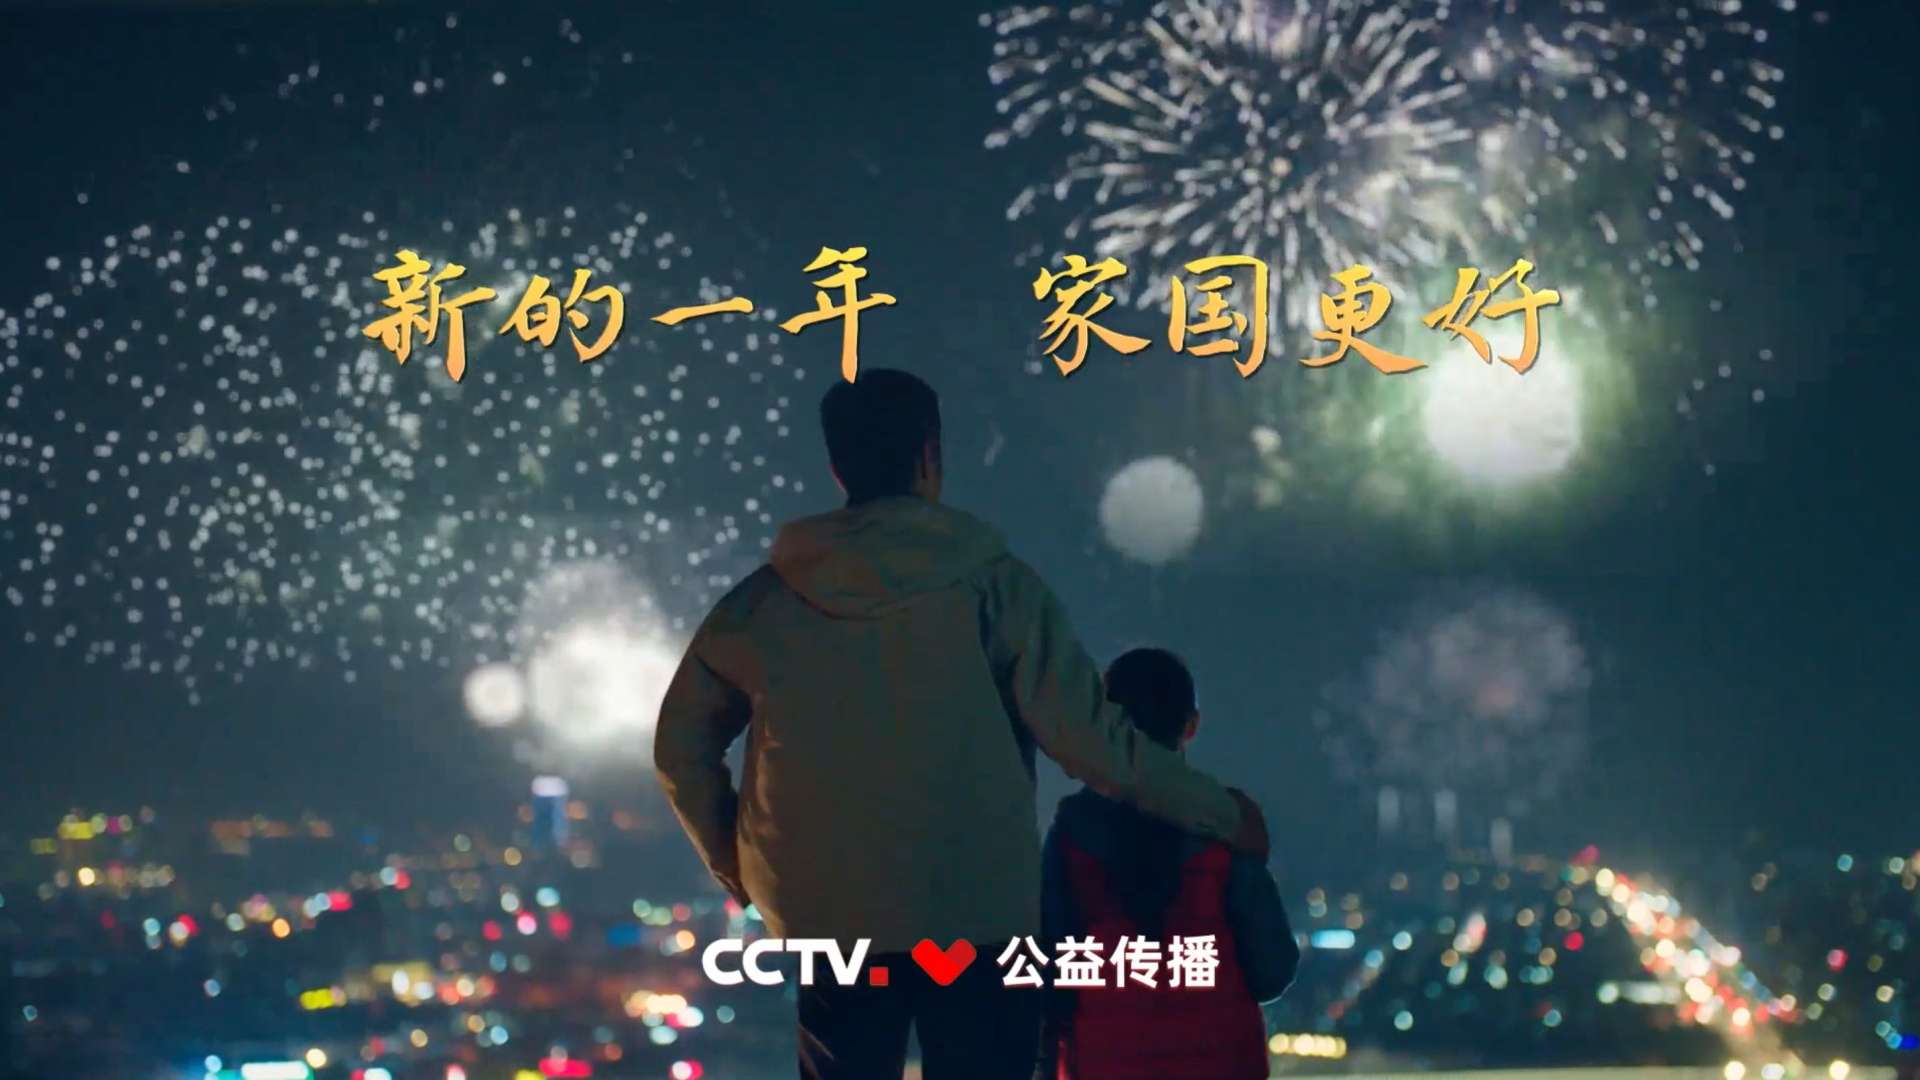 2021年春节联欢晚会公益广告《身边的好》-宣传片公益视频